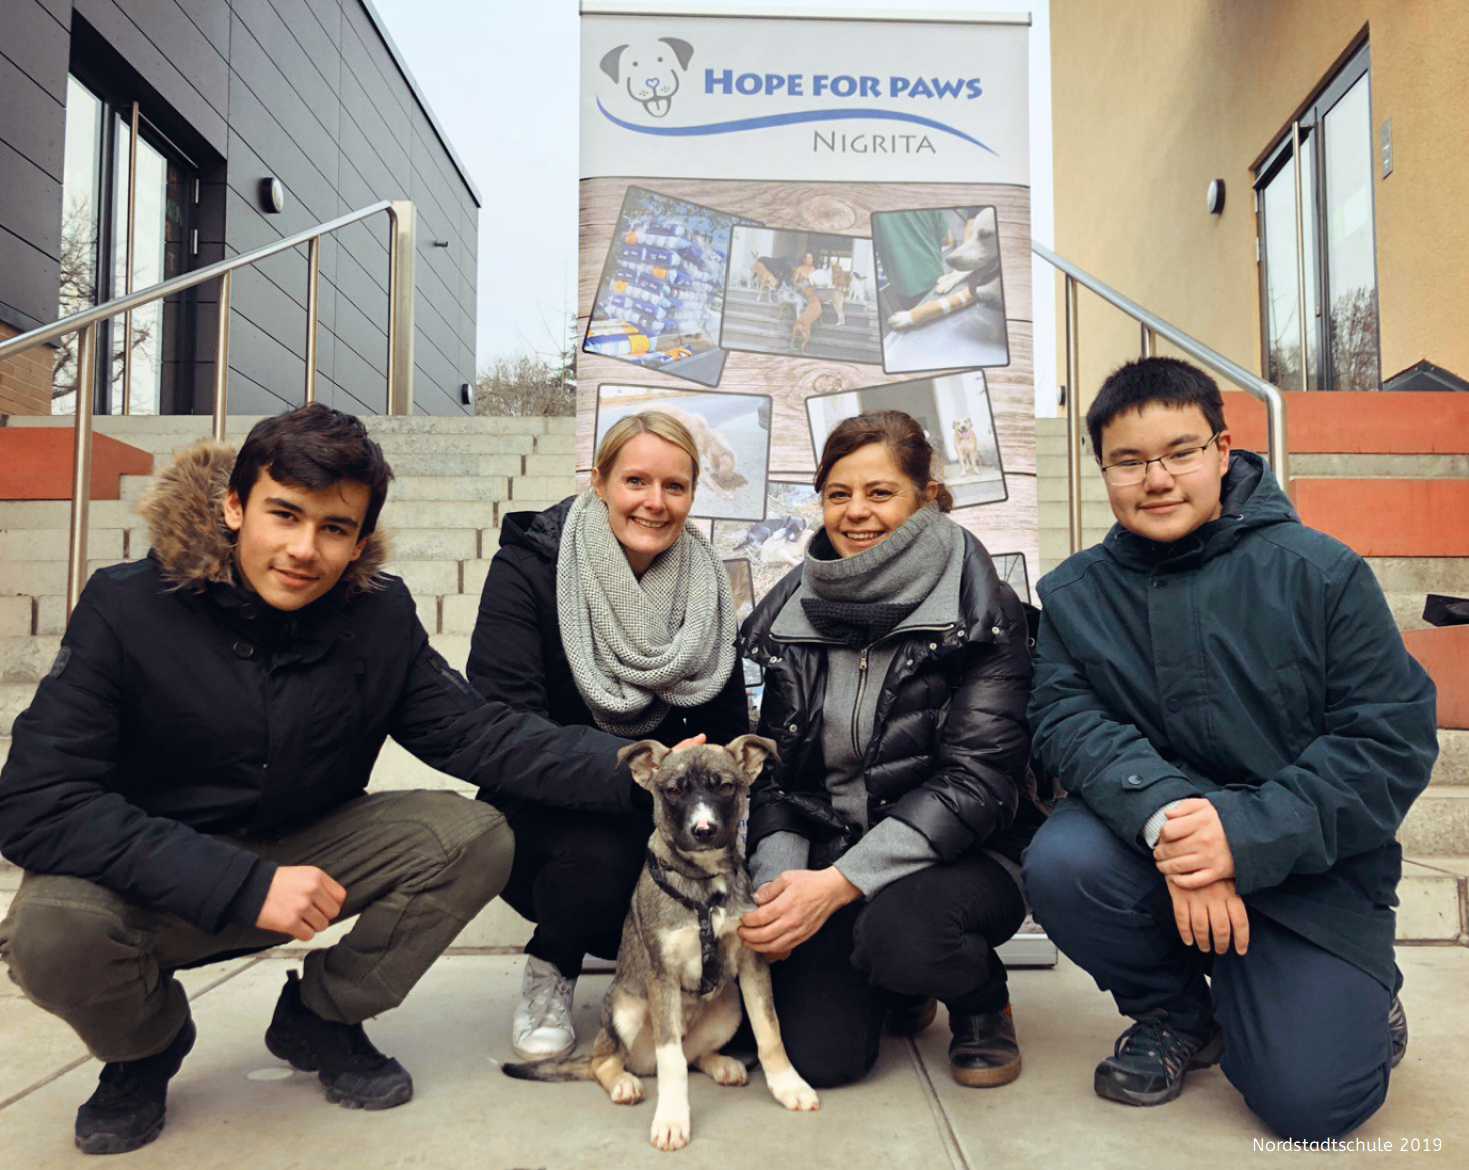 Auf diesem Bild sieht man Schülerinnen, Schüler und Lehrerinnen auf einer Treppe zusammen mit einem geretteten Hund.